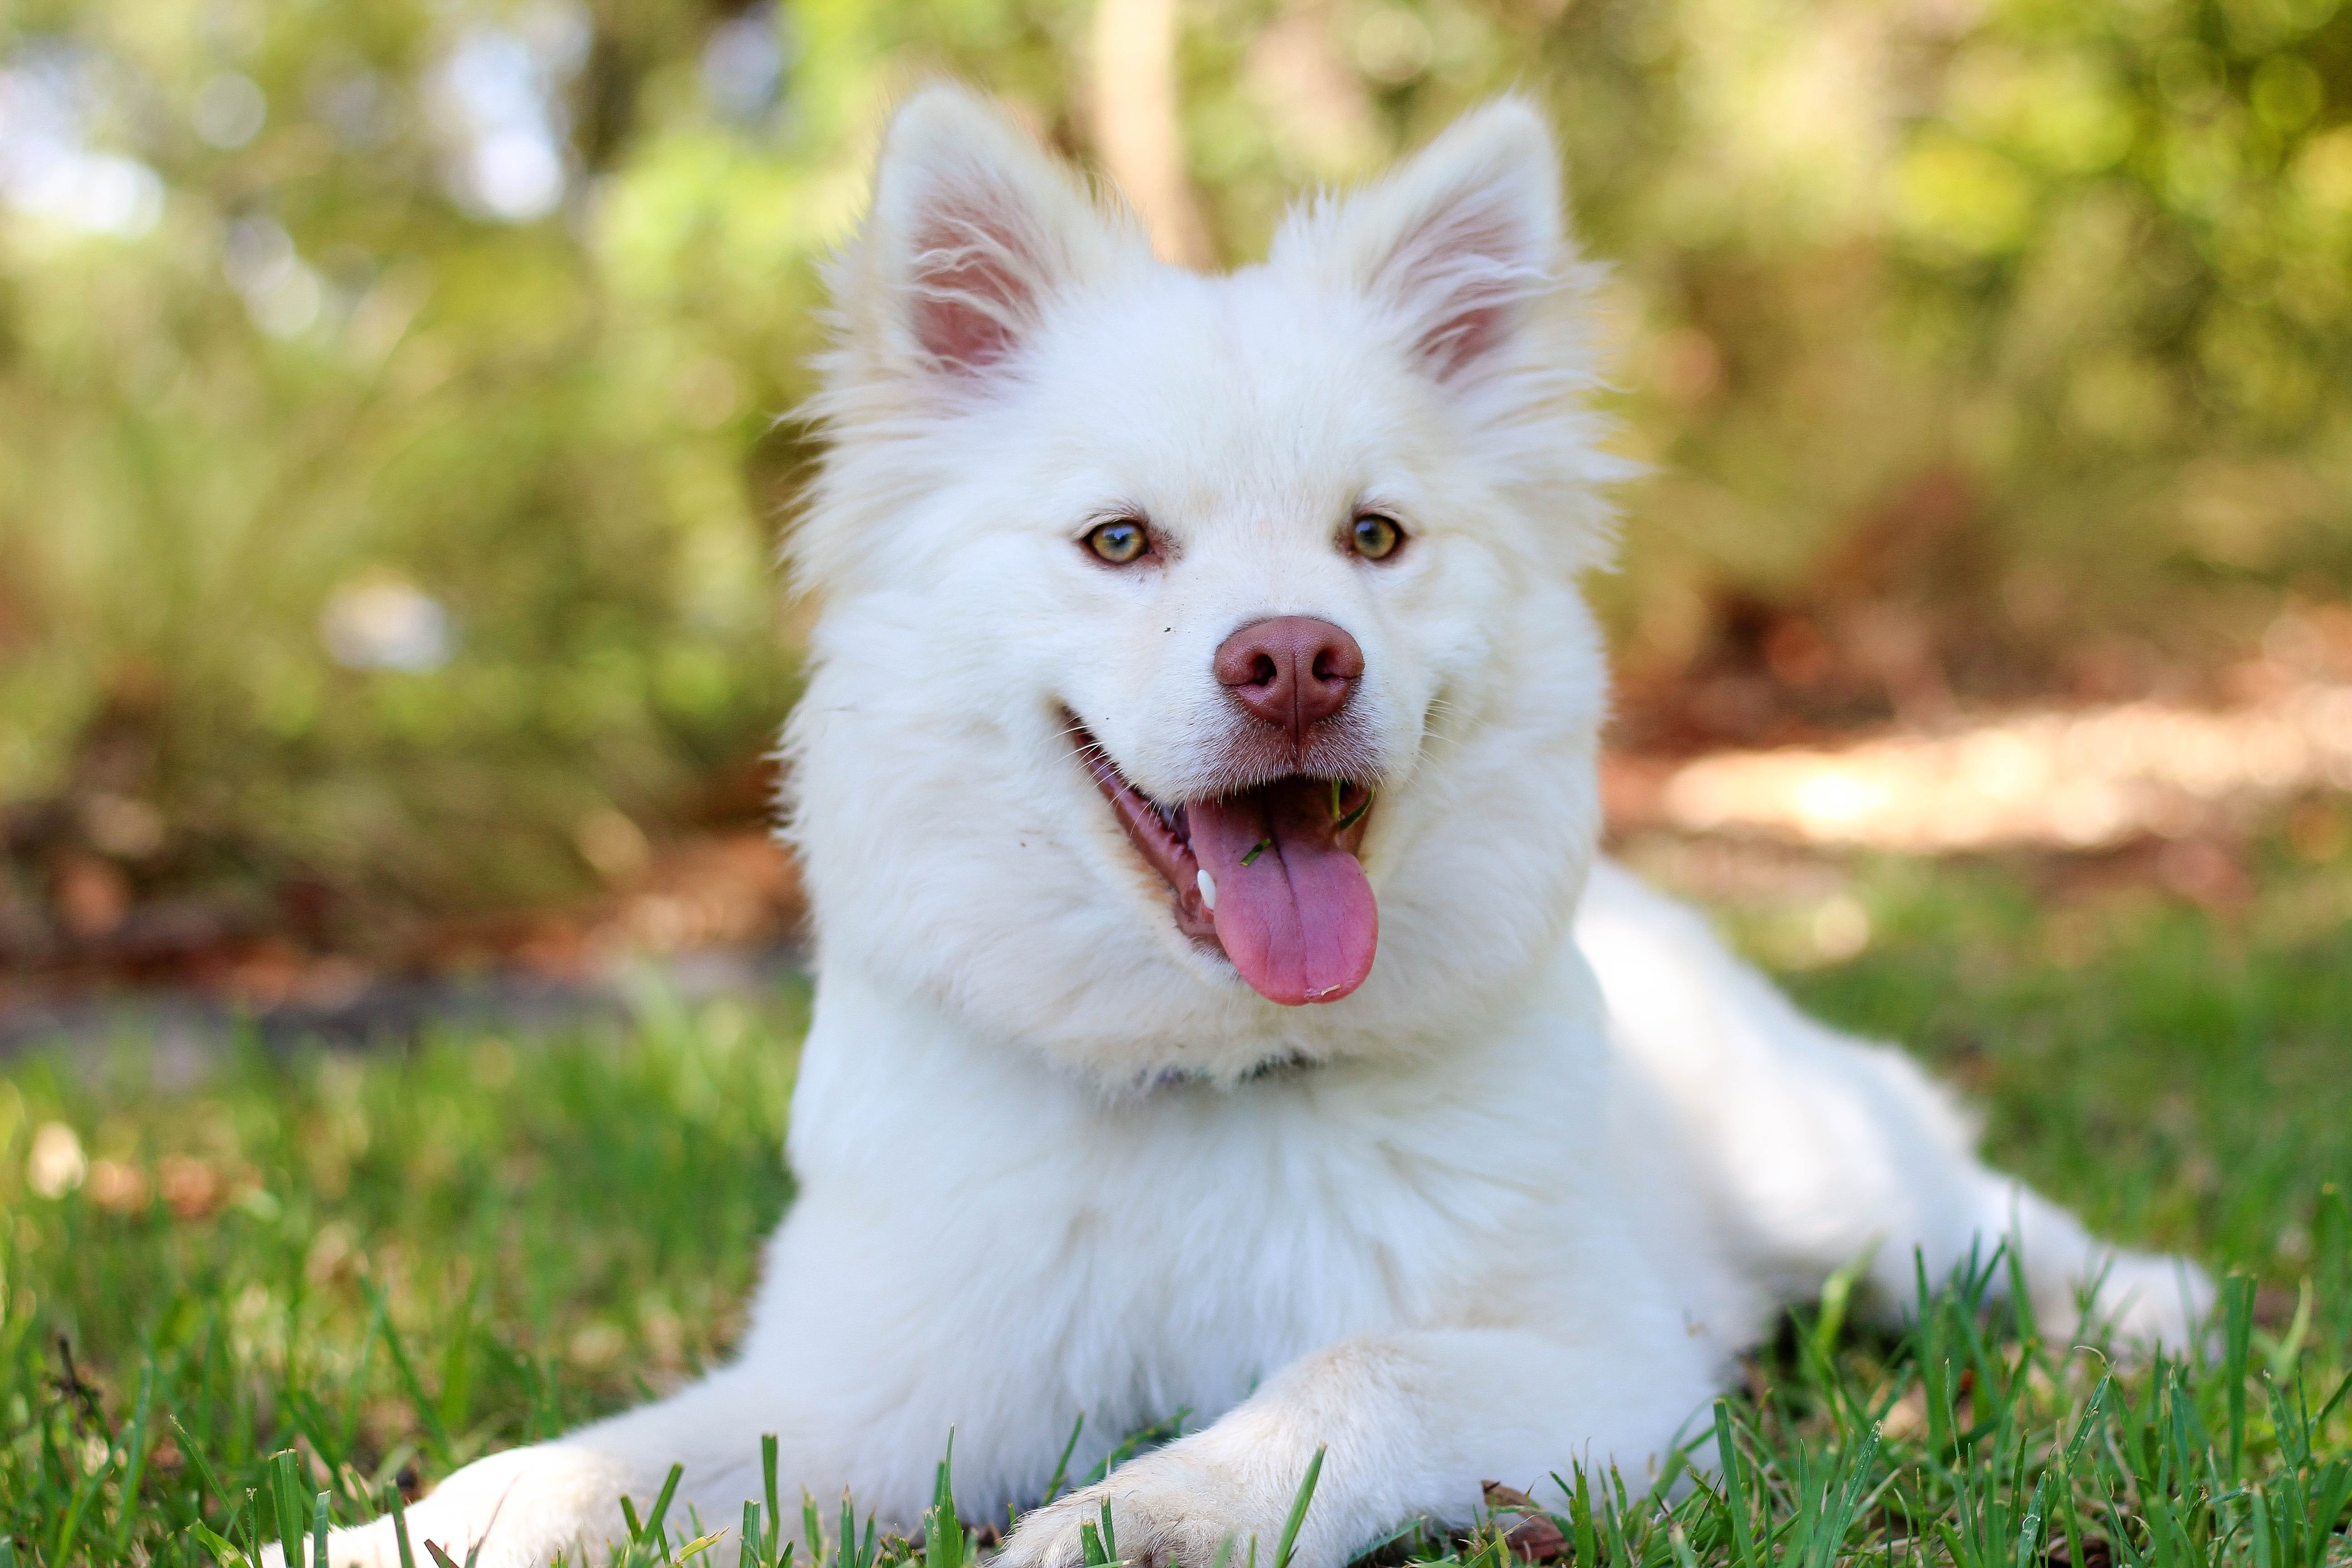 dog training treats adorable white dog